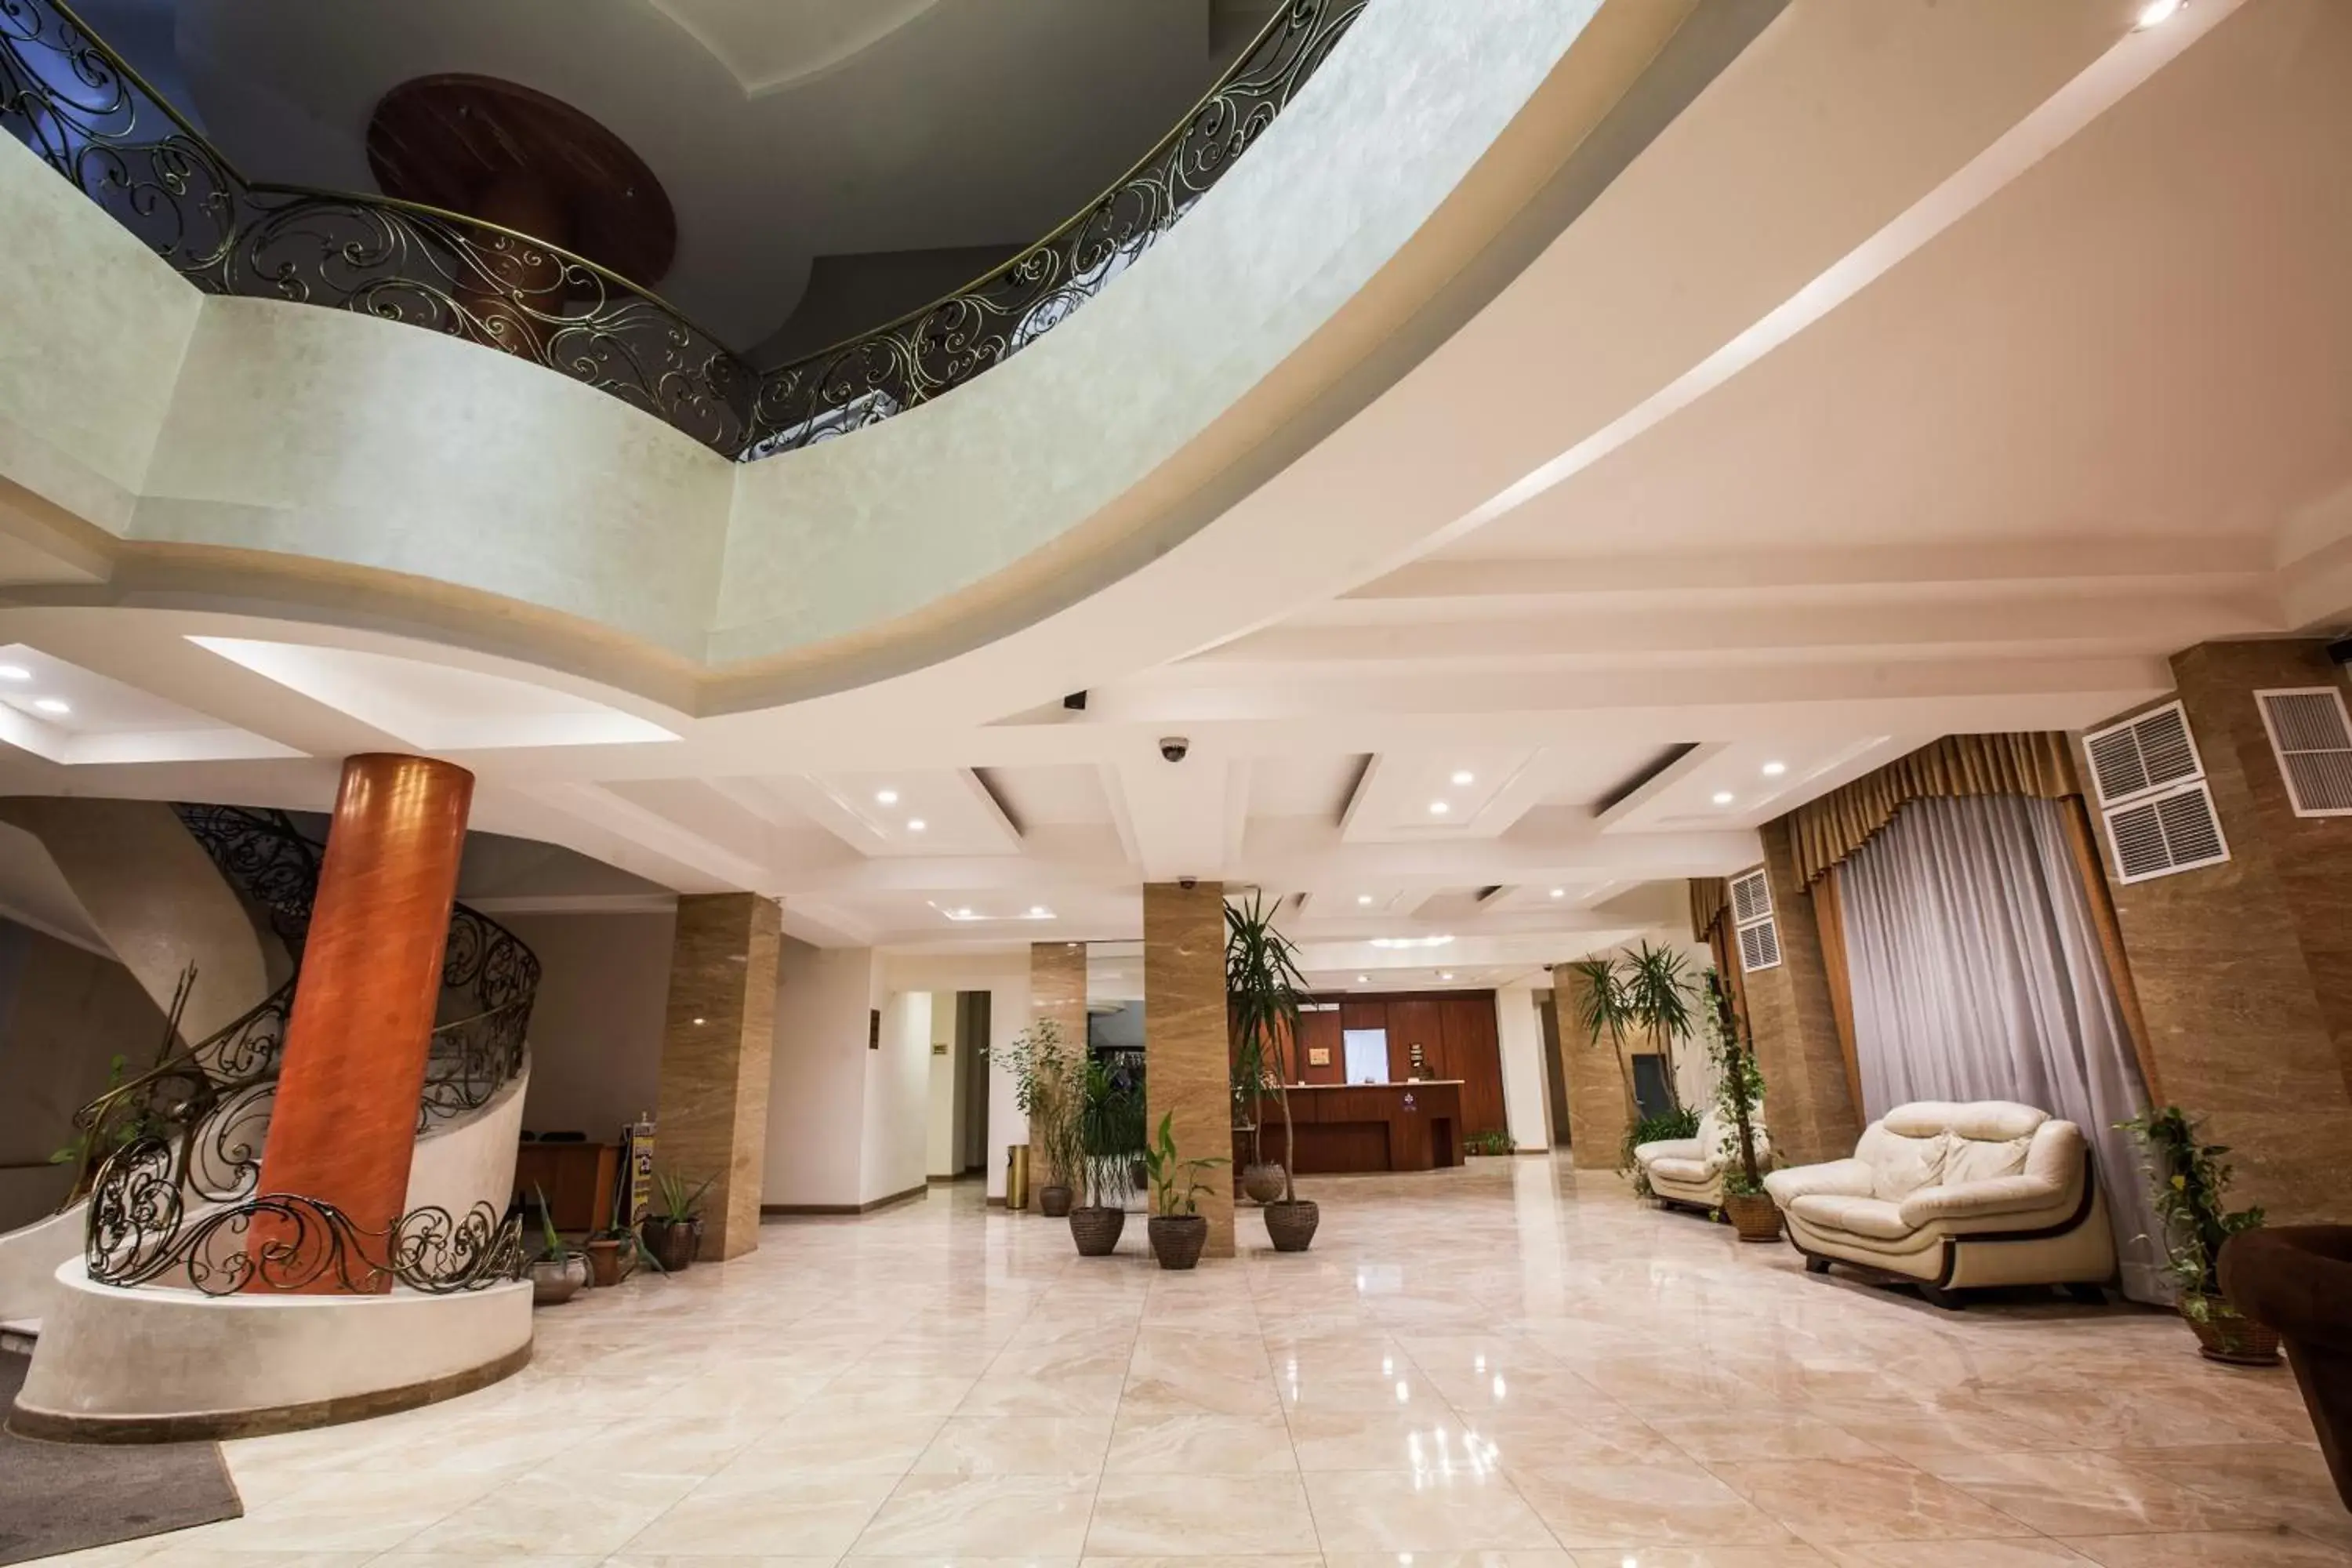 Lobby or reception, Lobby/Reception in Aviatrans Hotel